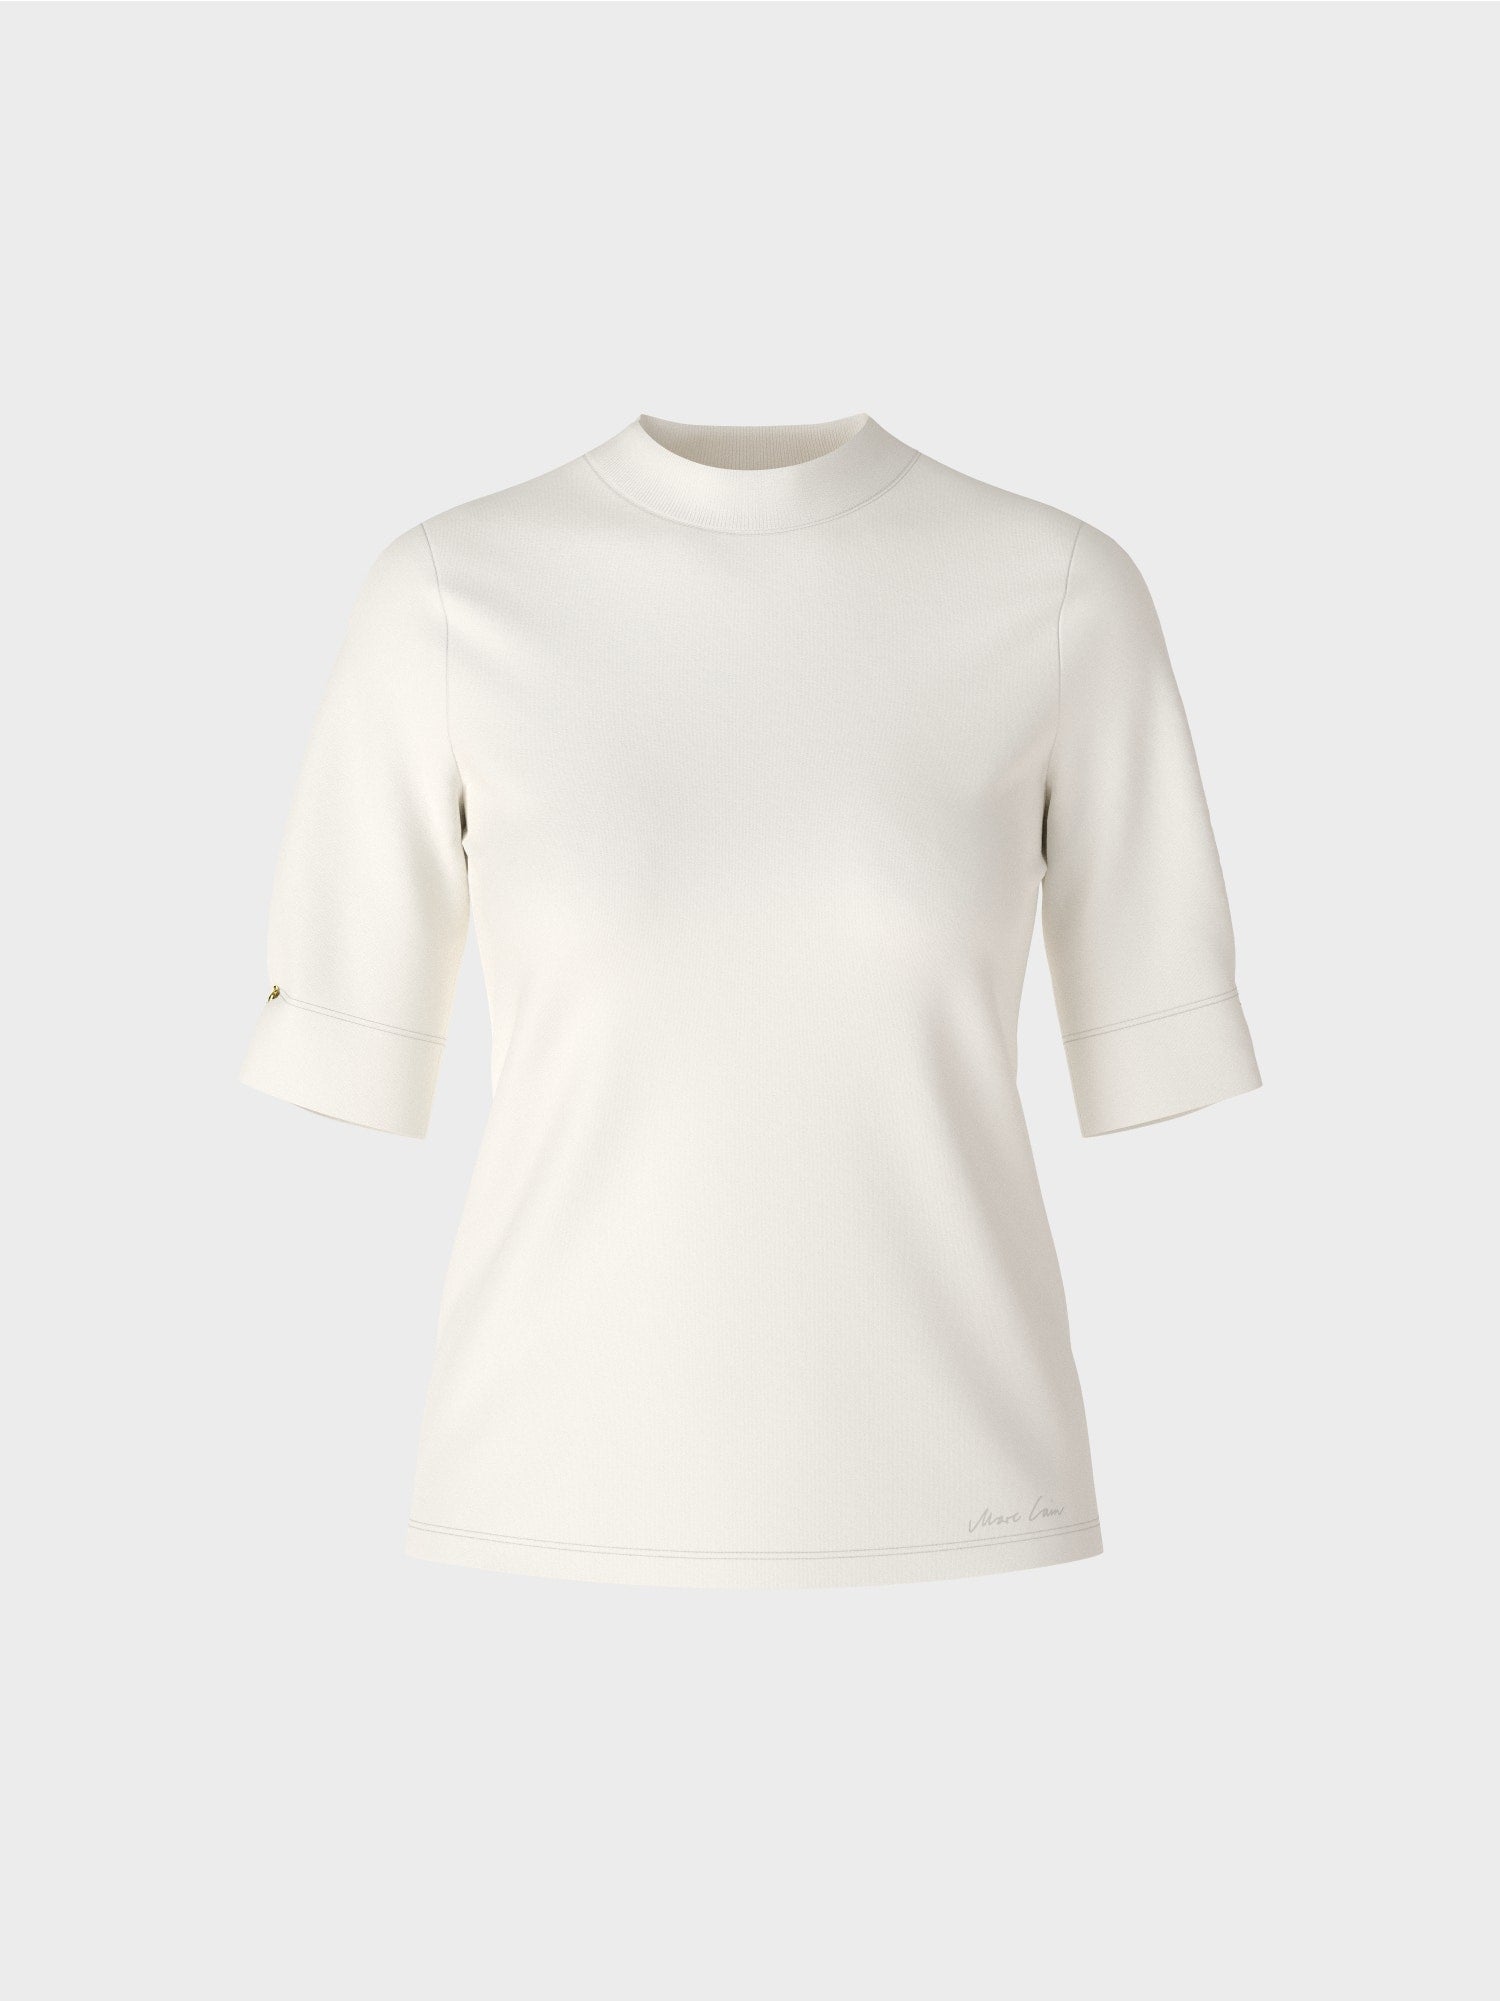 off-white t-shirt